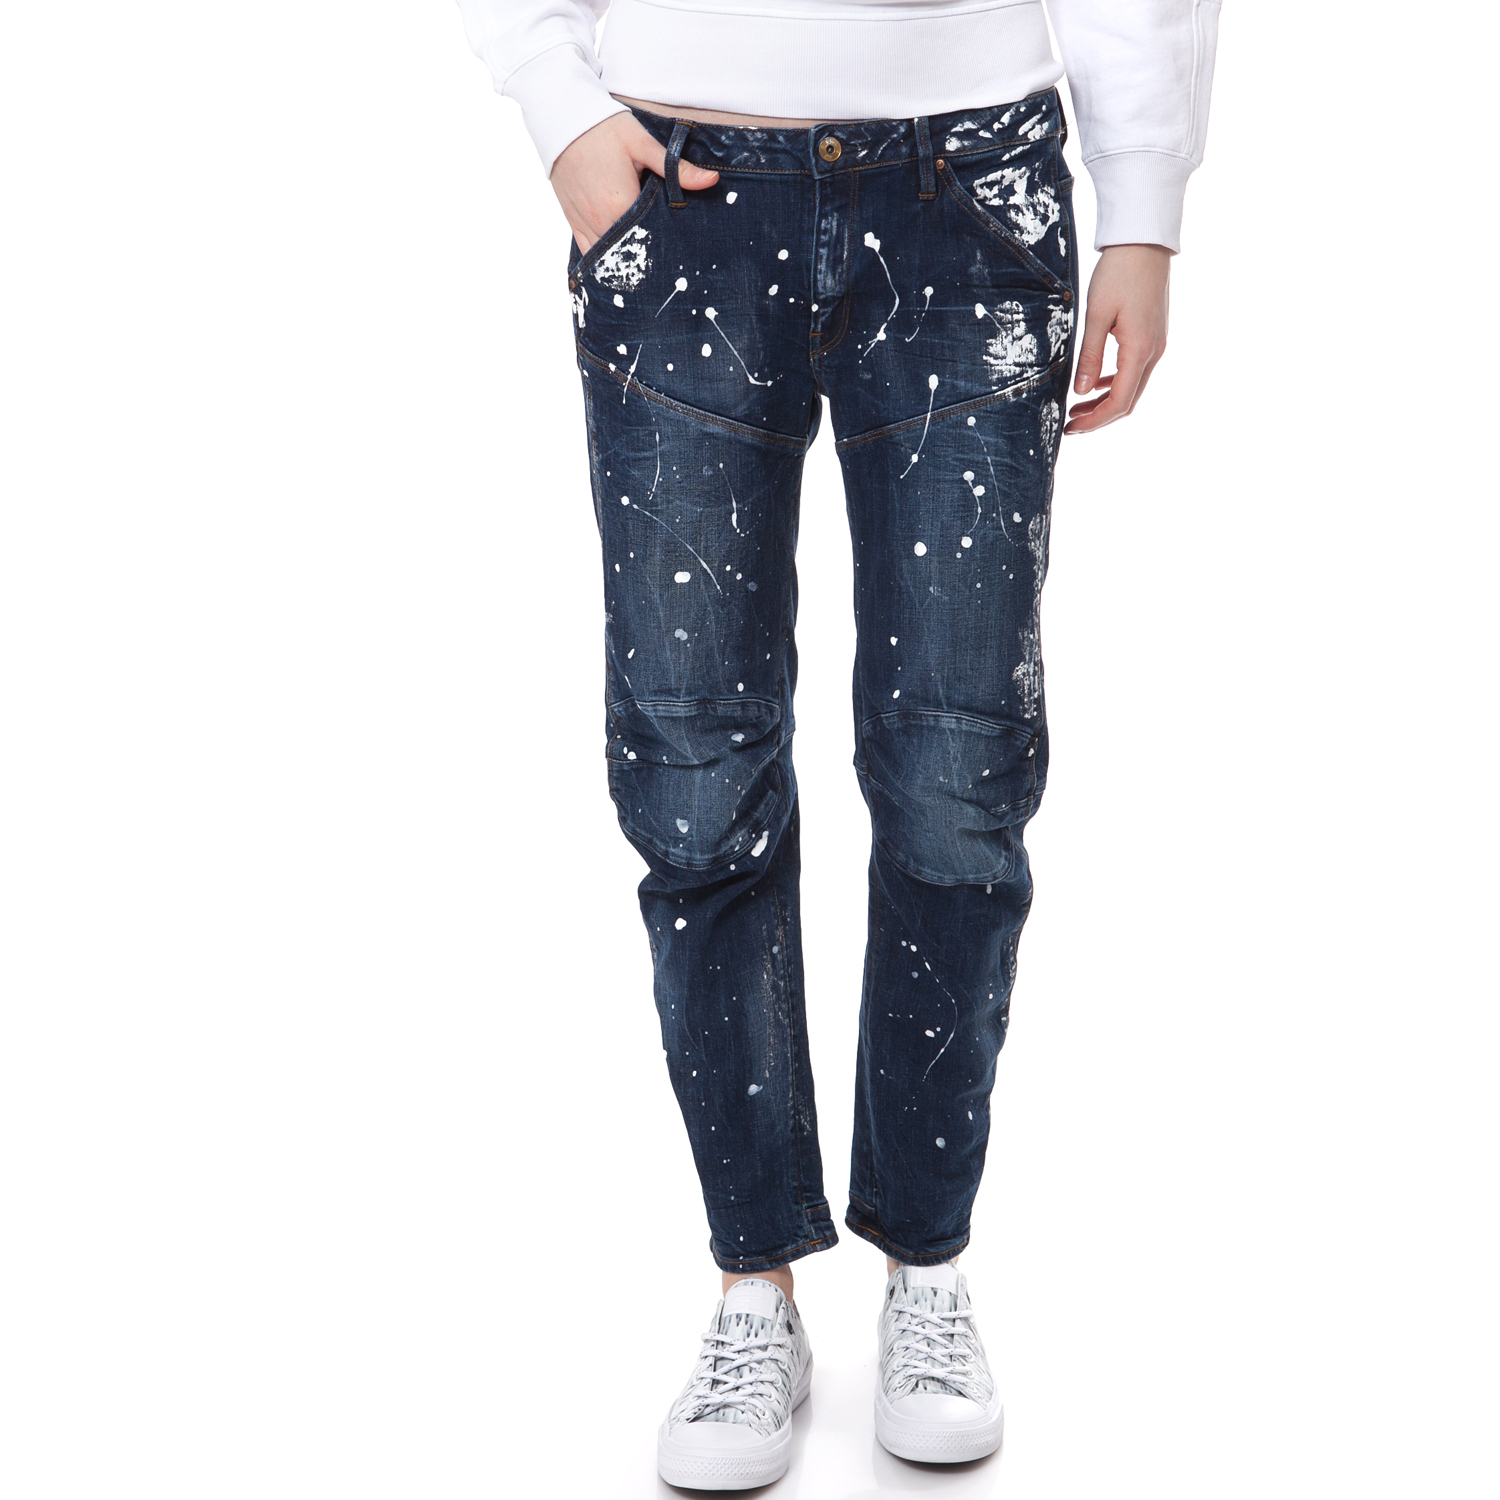 Γυναικεία/Ρούχα/Τζίν/Boyfriend G-STAR - Γυναικείο τζιν παντελόνι G-STAR RAW μπλε